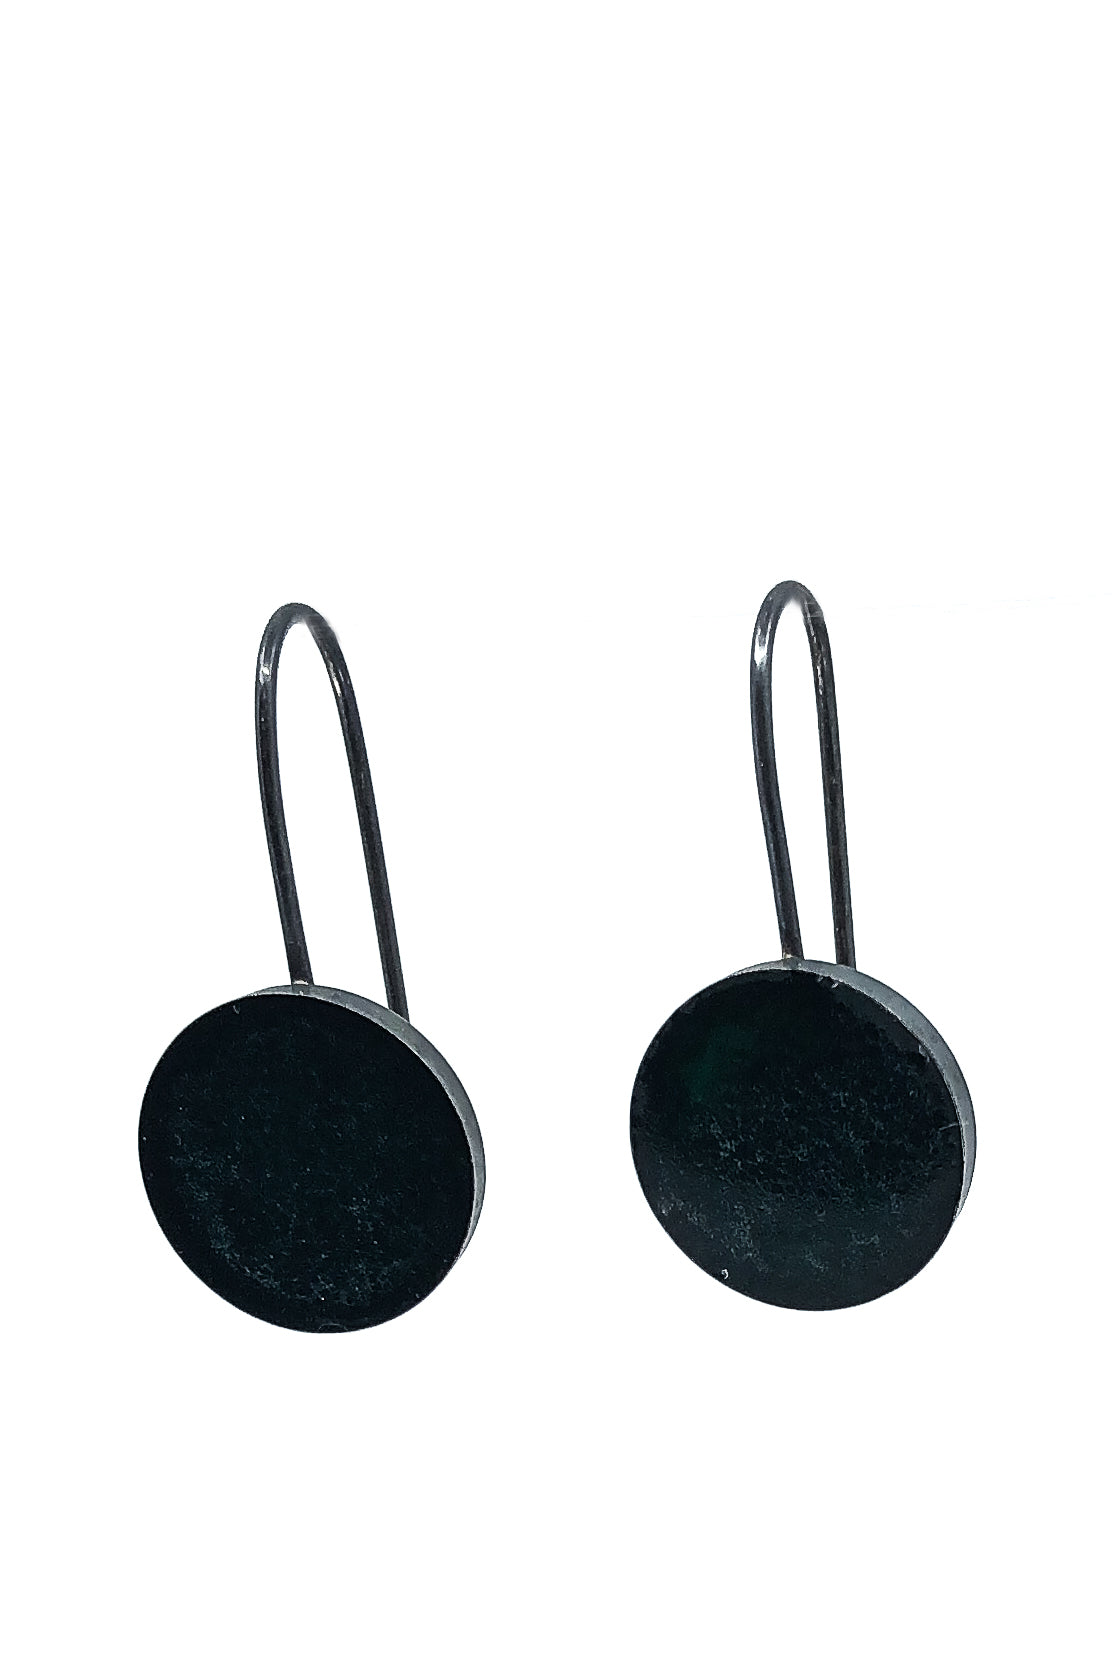 Boucles d'oreilles simples minimalistes en argent sterling 925 oxydé rempli de résine vert foncé presque noire